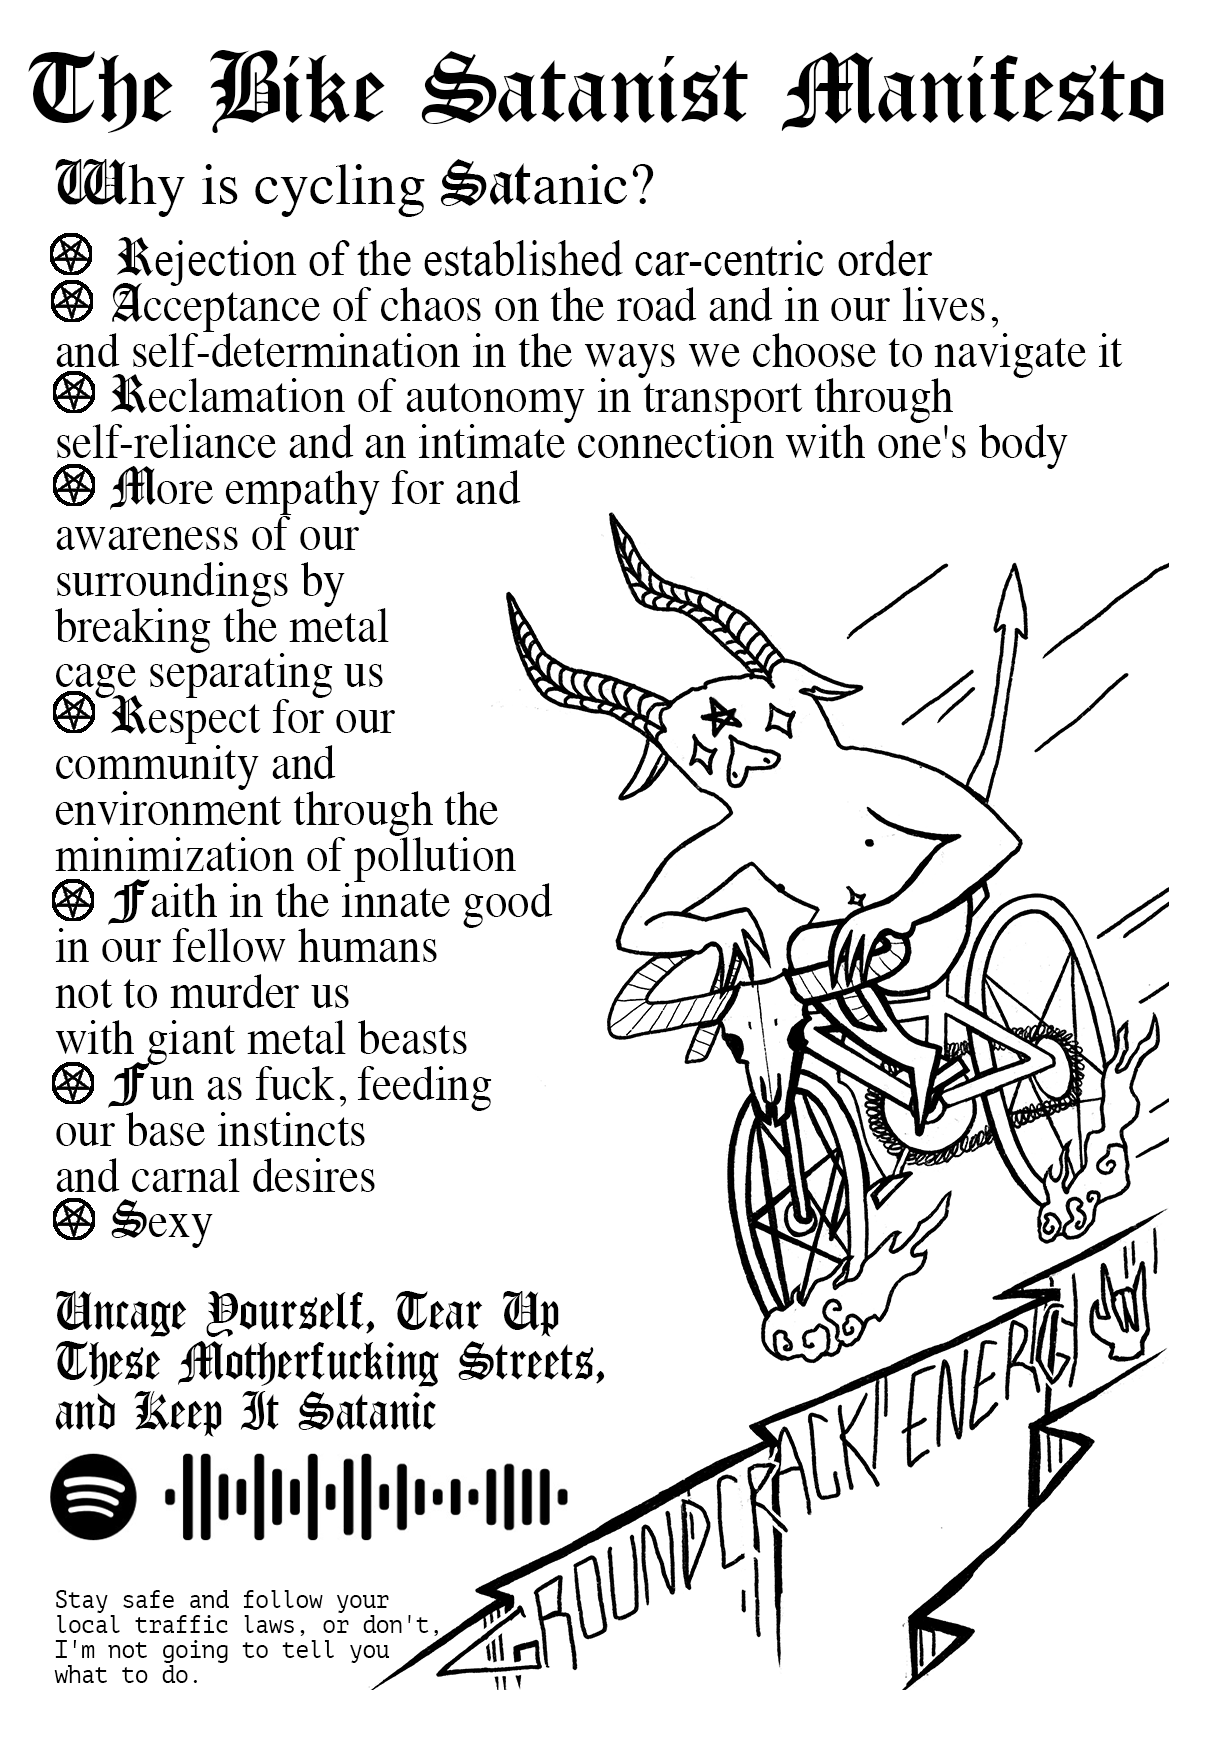 bikesatanist manifesto